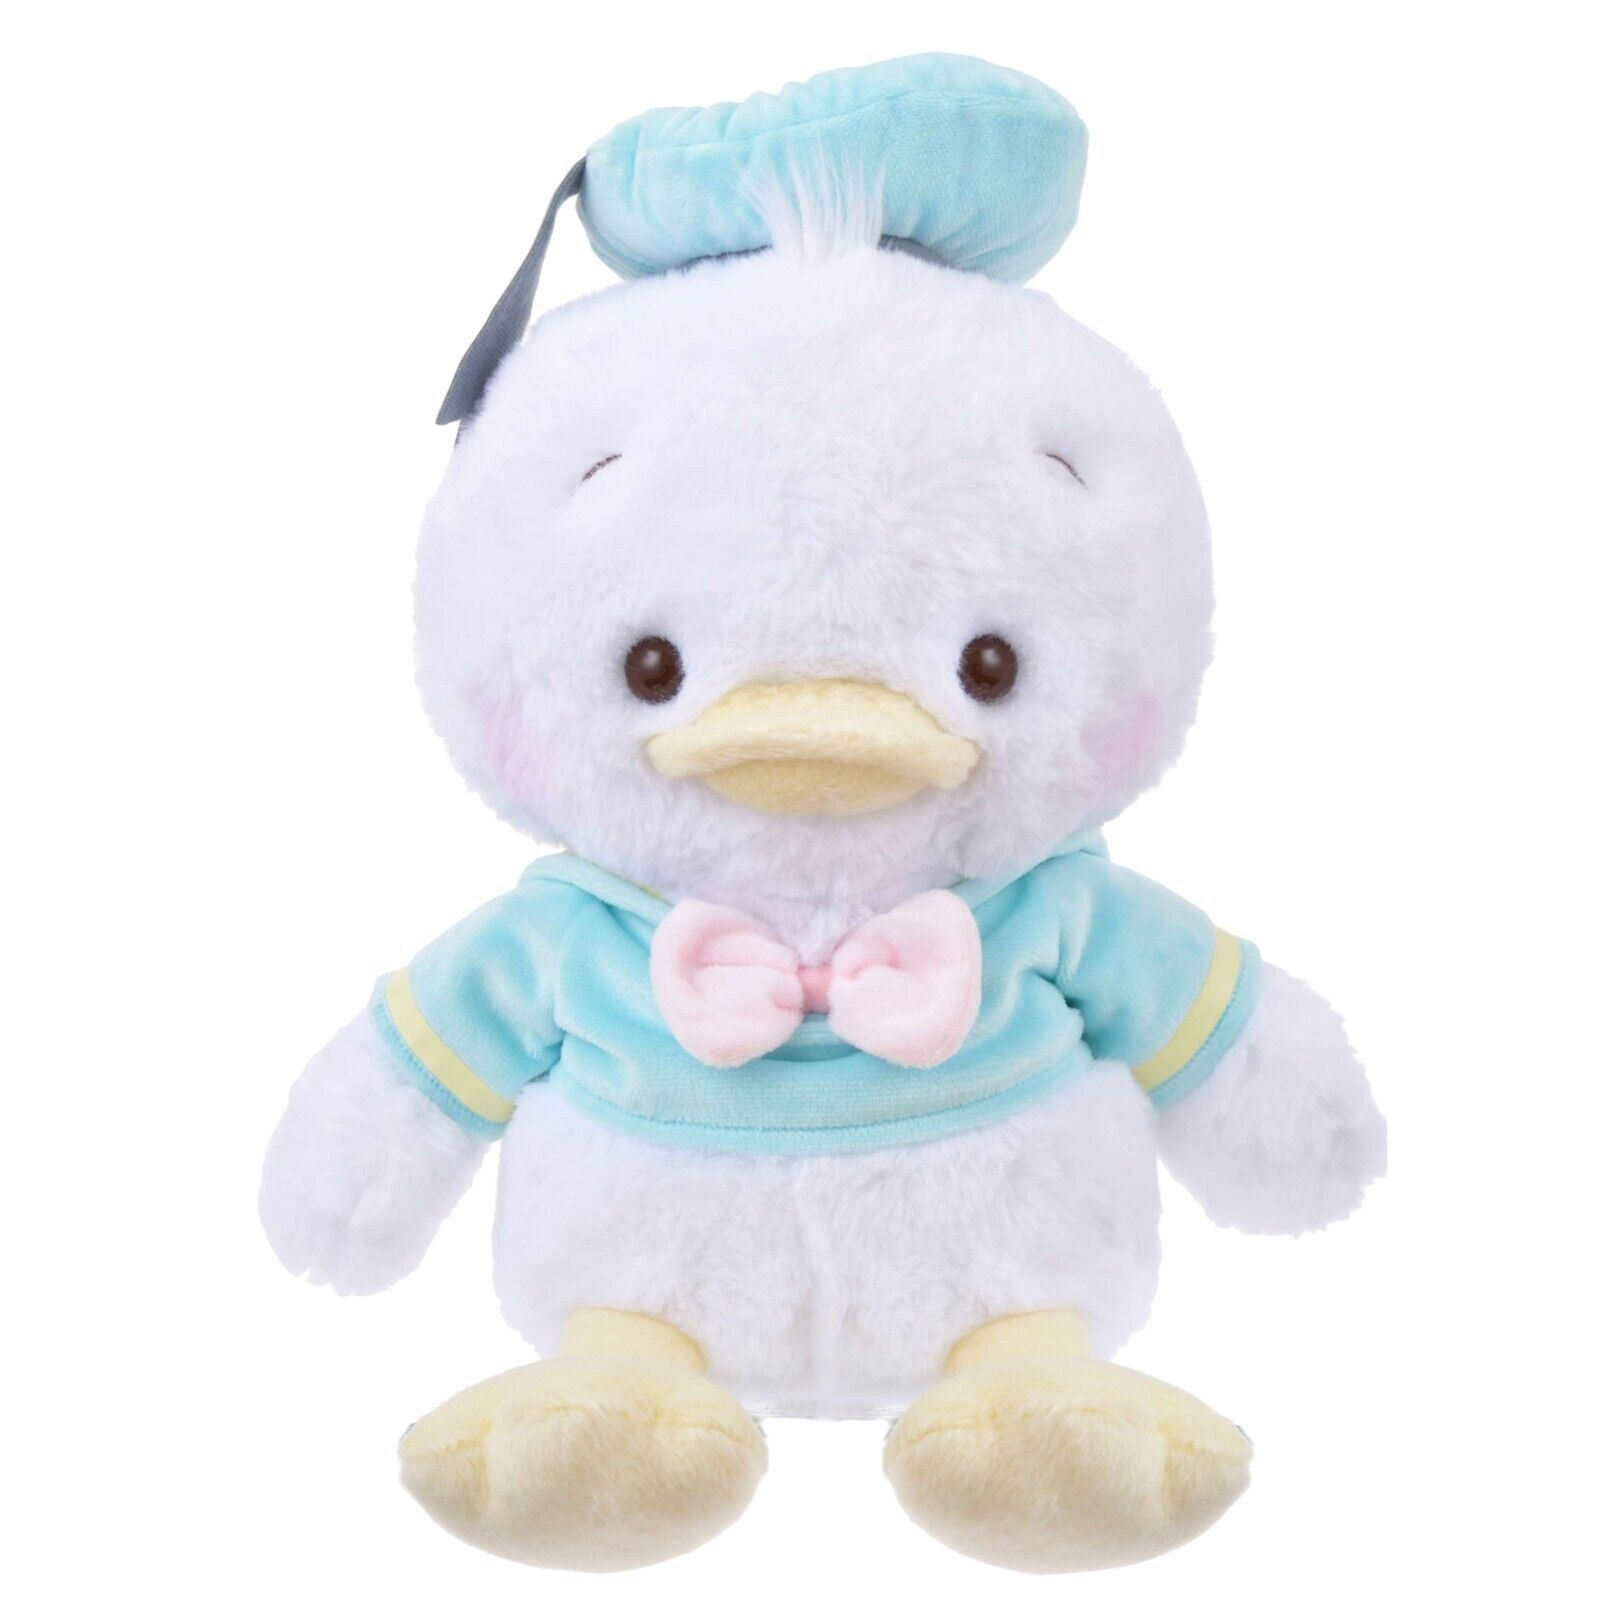 Japan Tokyo Disney Store Donald Duck Plush Toy KUSUMI PASTEL